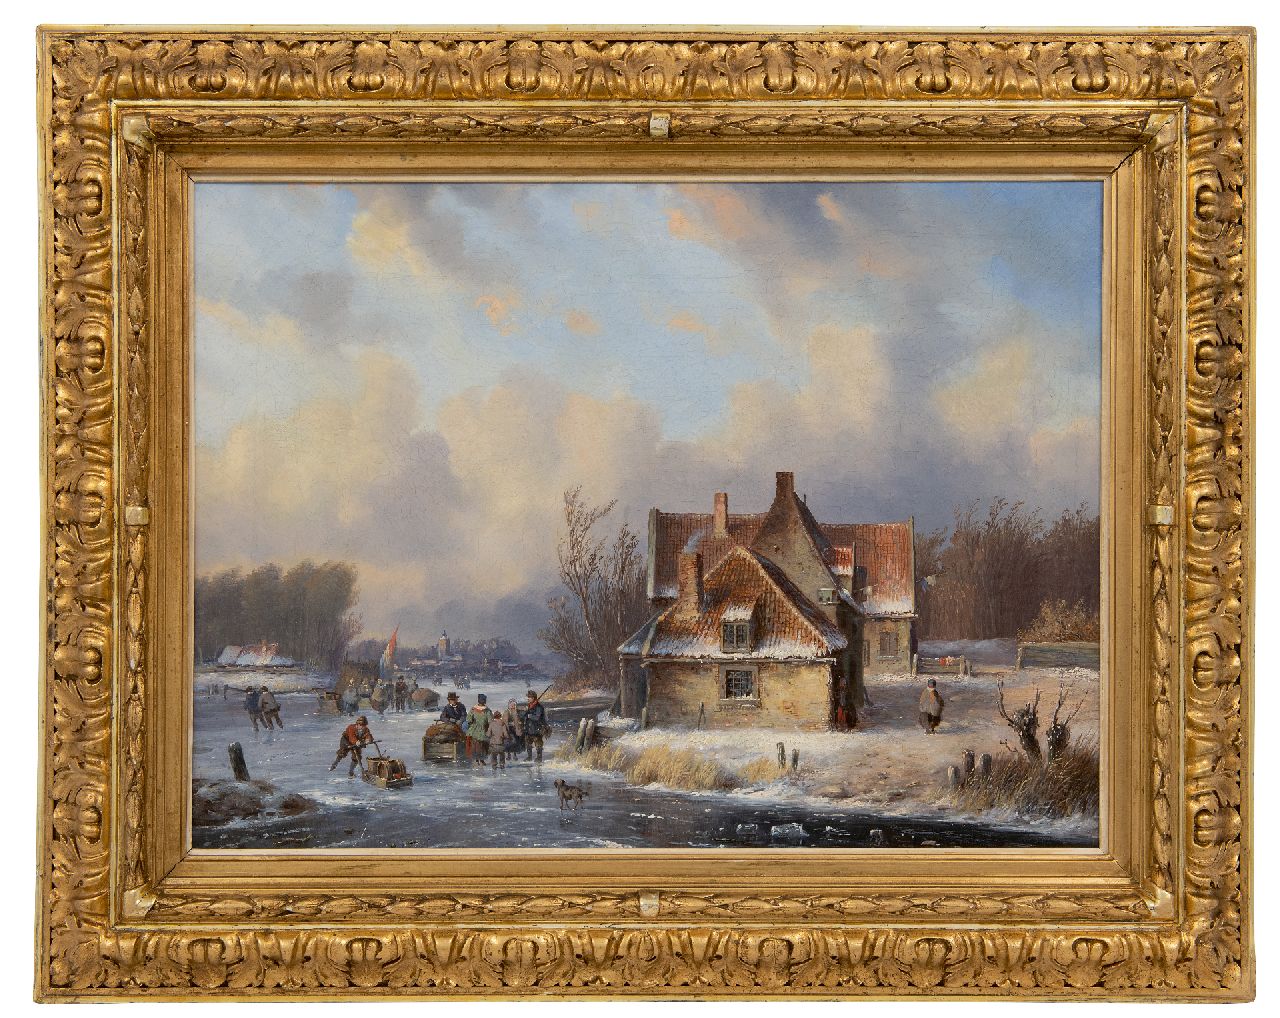 Ahrendts C.E.  | Carl Eduard Ahrendts | Schilderijen te koop aangeboden | Wintergezicht met veel figuren op het ijs, olieverf op doek 39,4 x 52,5 cm, gesigneerd linksonder